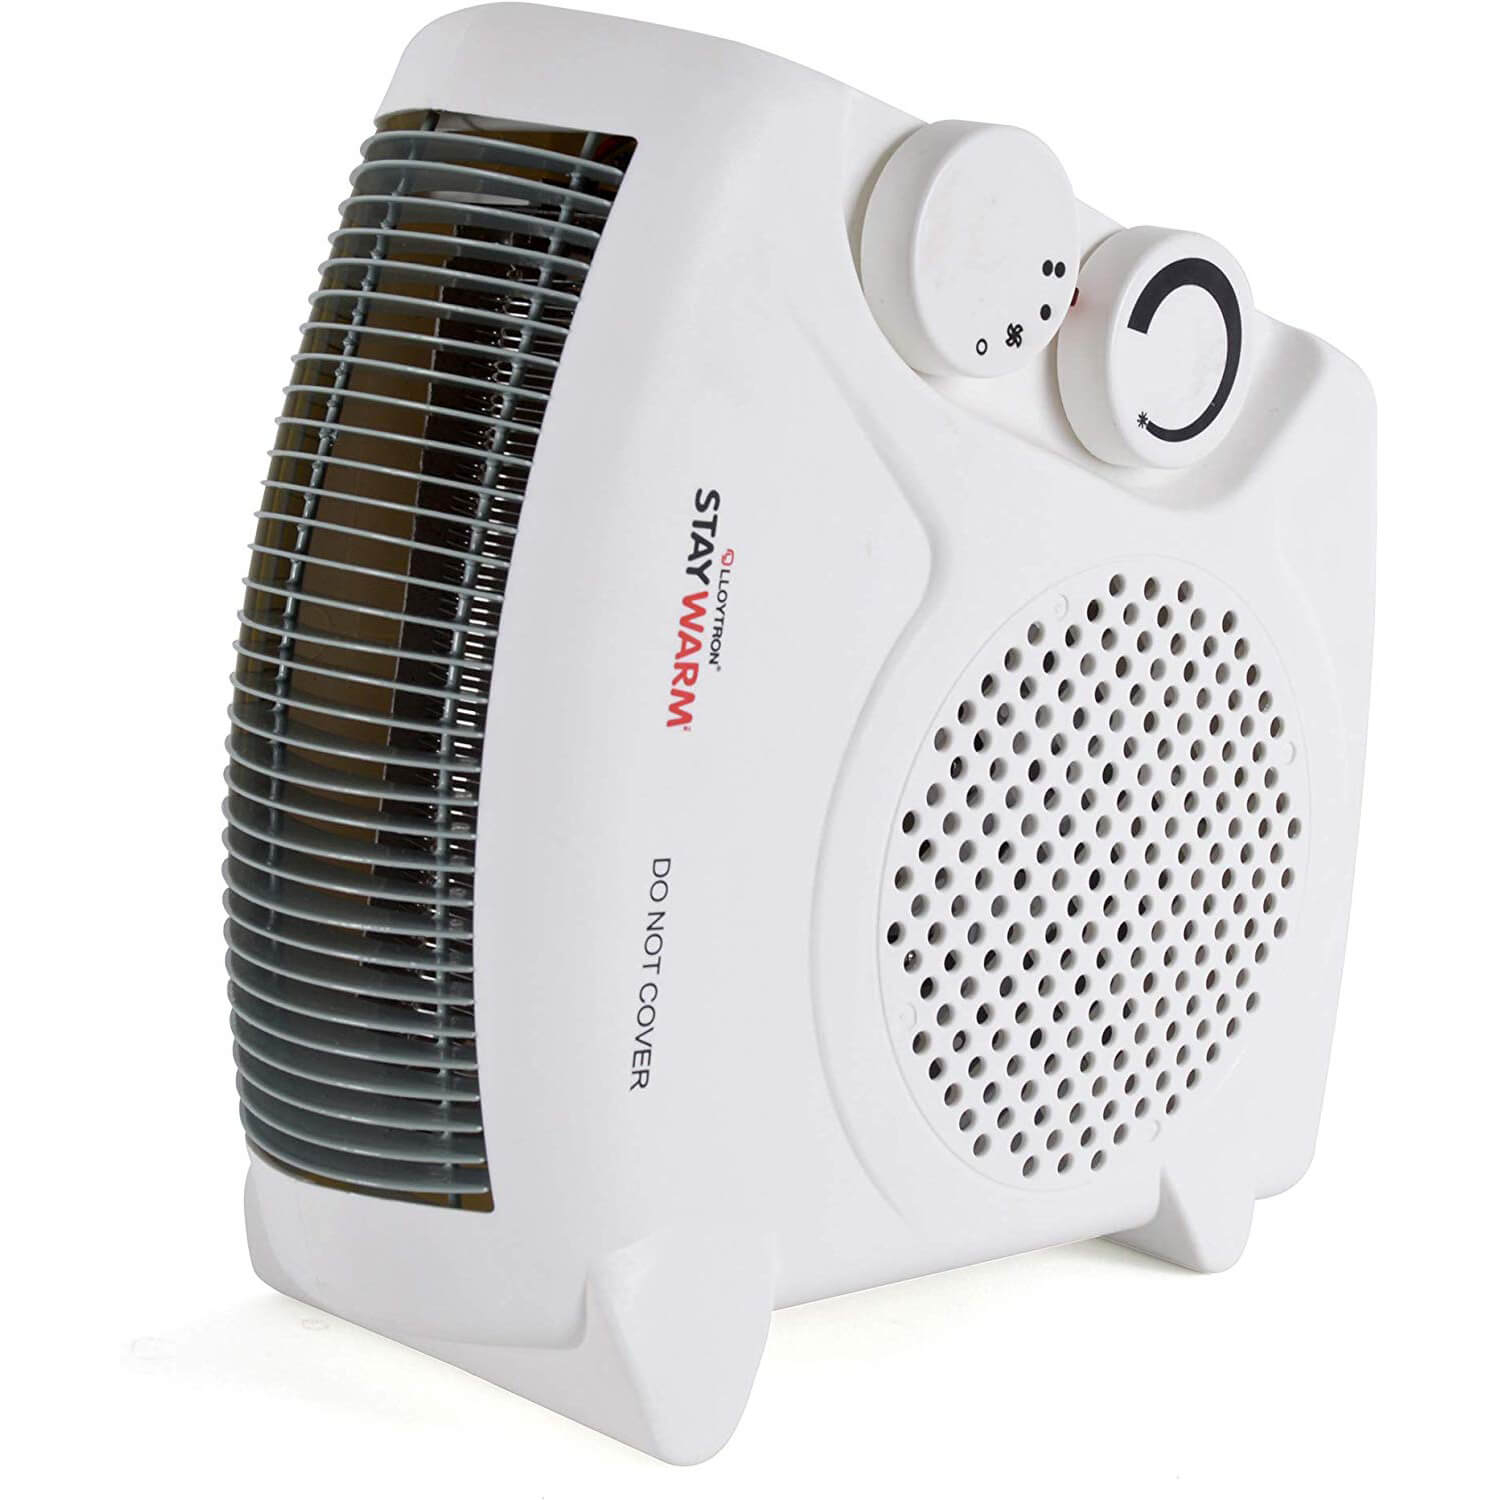 Best Fan Heaters For 2020 Heat Pump Source in size 1500 X 1500